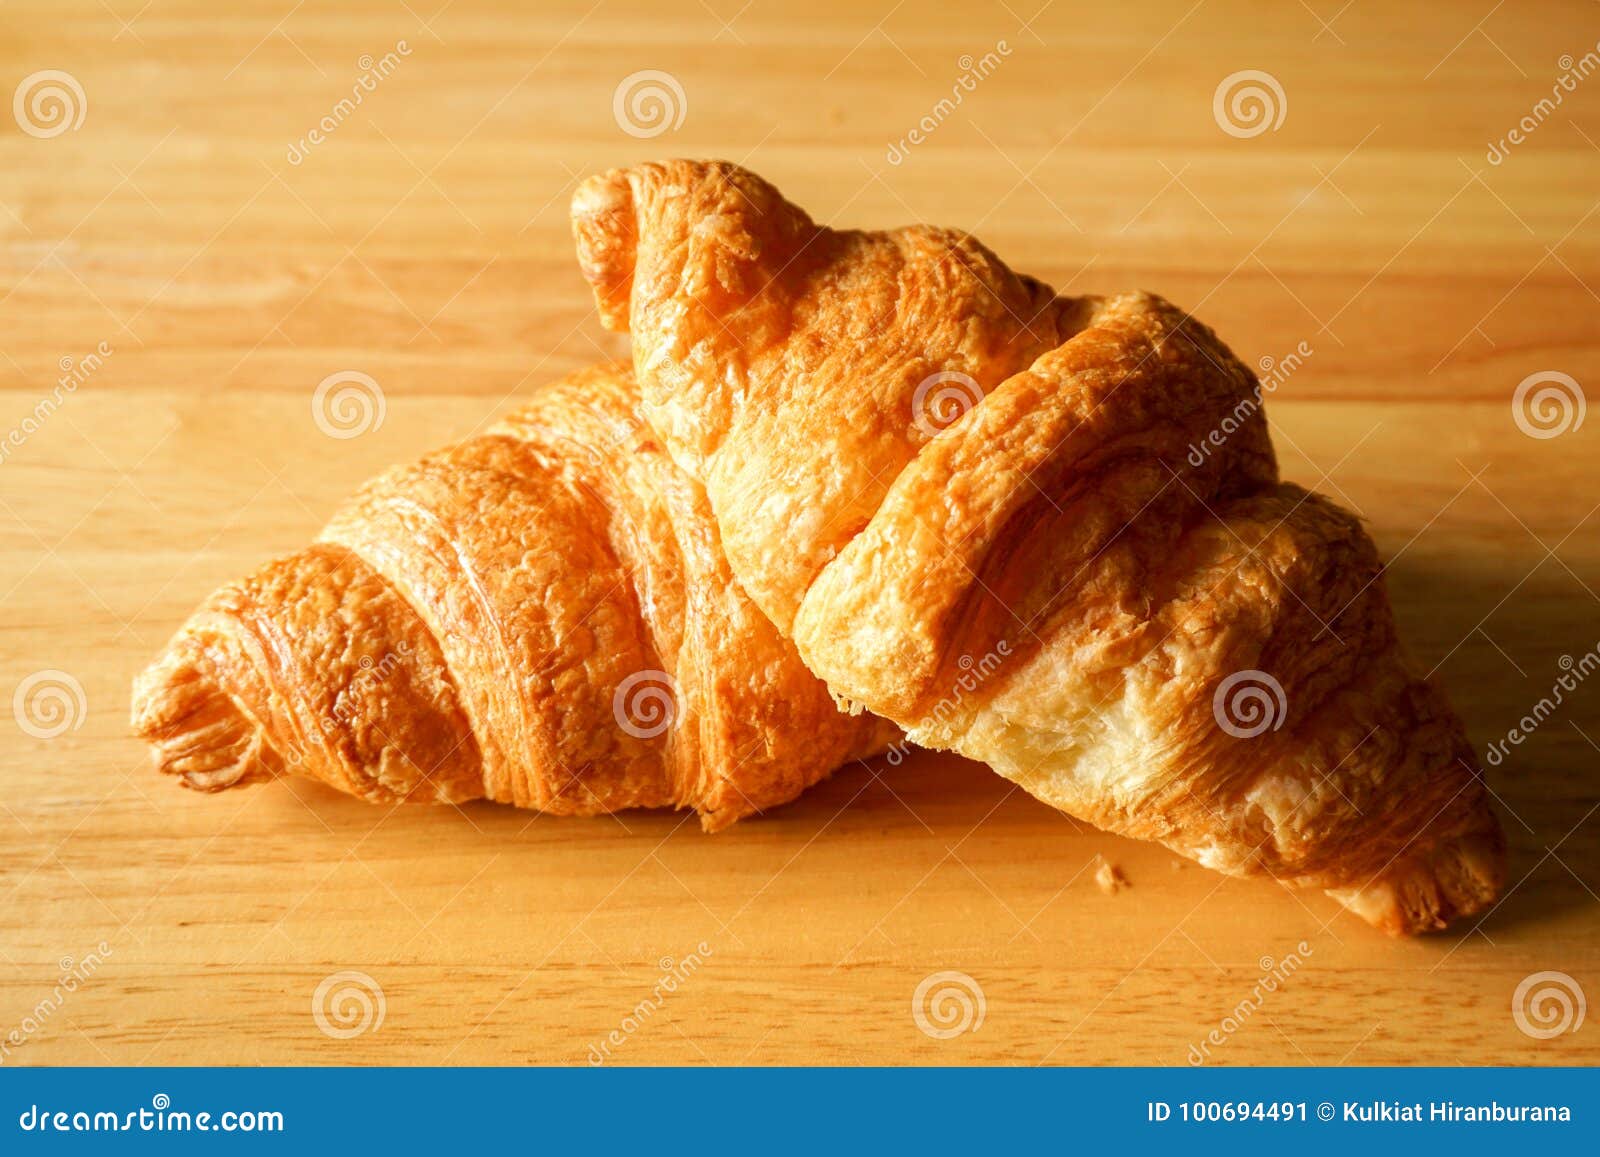 Twee Croissants op Lijstbovenkant. Croissant twee werd geplaatst op Houten Lijst met Close-upschot